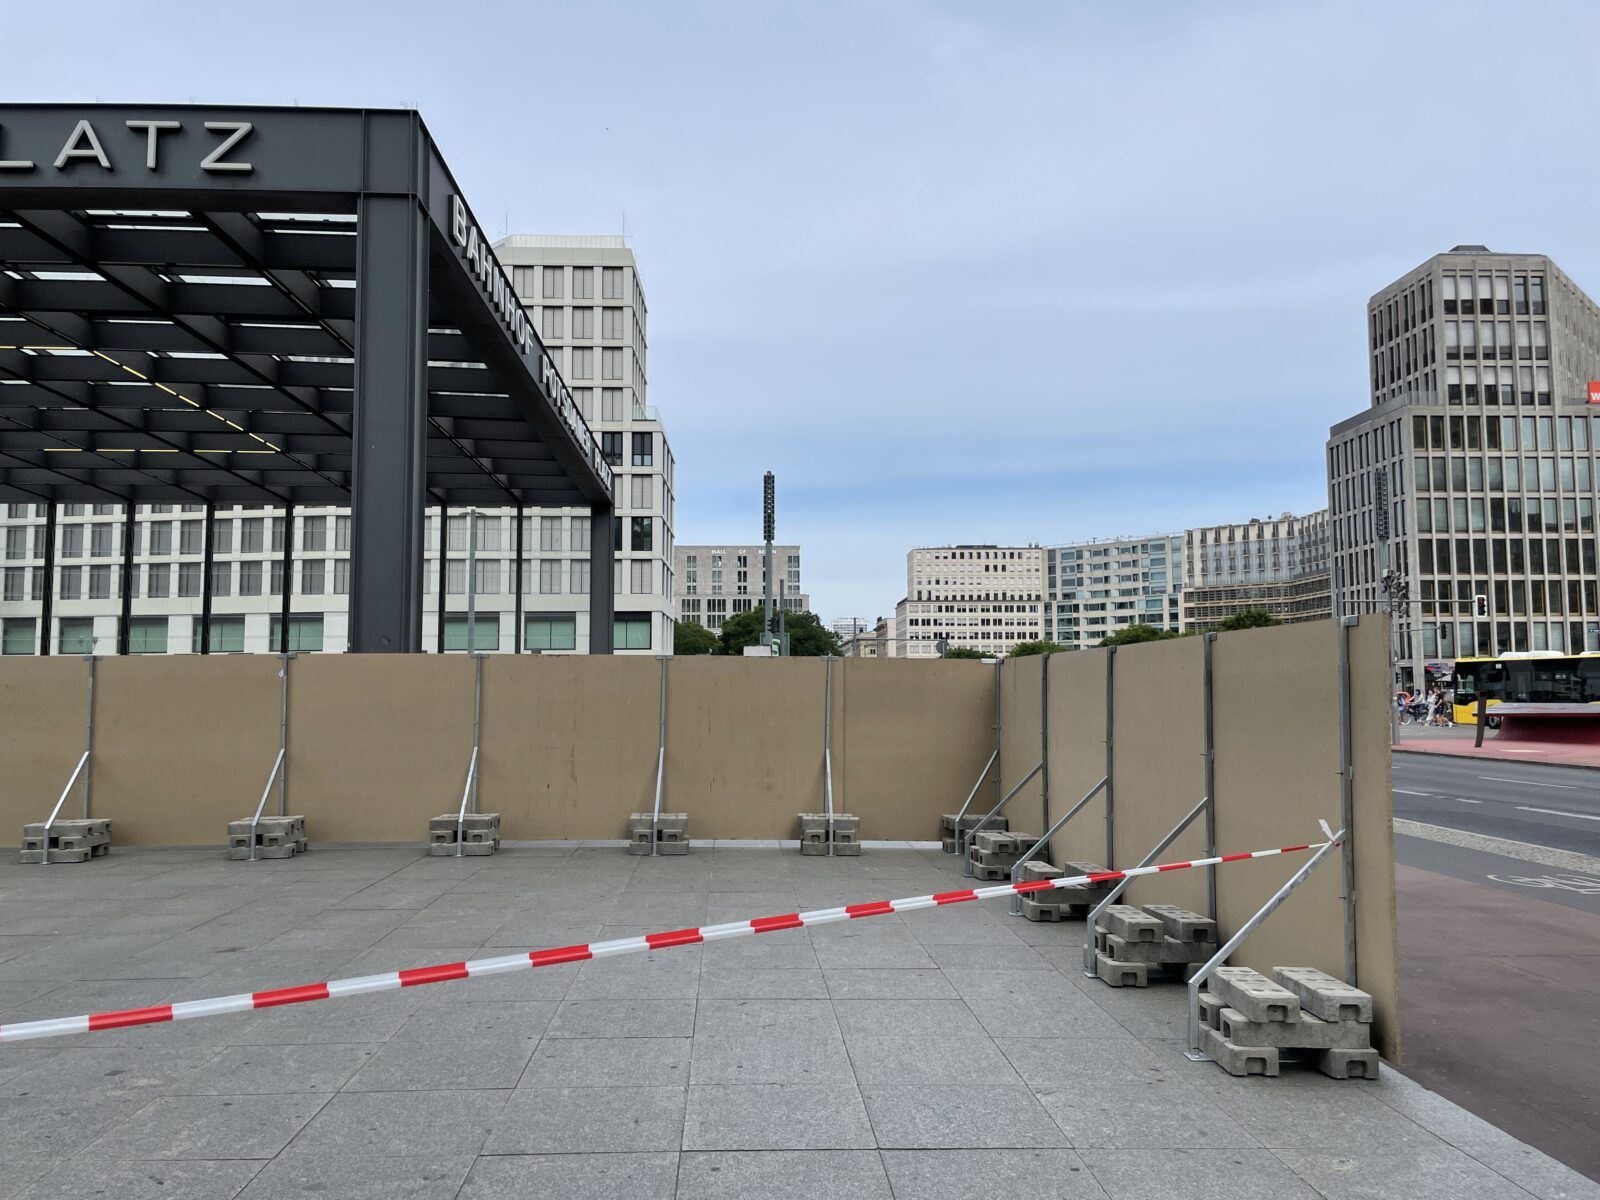 Das Foto zeigt einen abgesperrten Bereich auf dem Potsdamer Platz in Berlin. Durch eine Absperrung wie diese kann man sich nicht frei auf dem Platz bewegen. Wenn dort AR-Elemente platziert sind, sind diese nicht zugänglich.